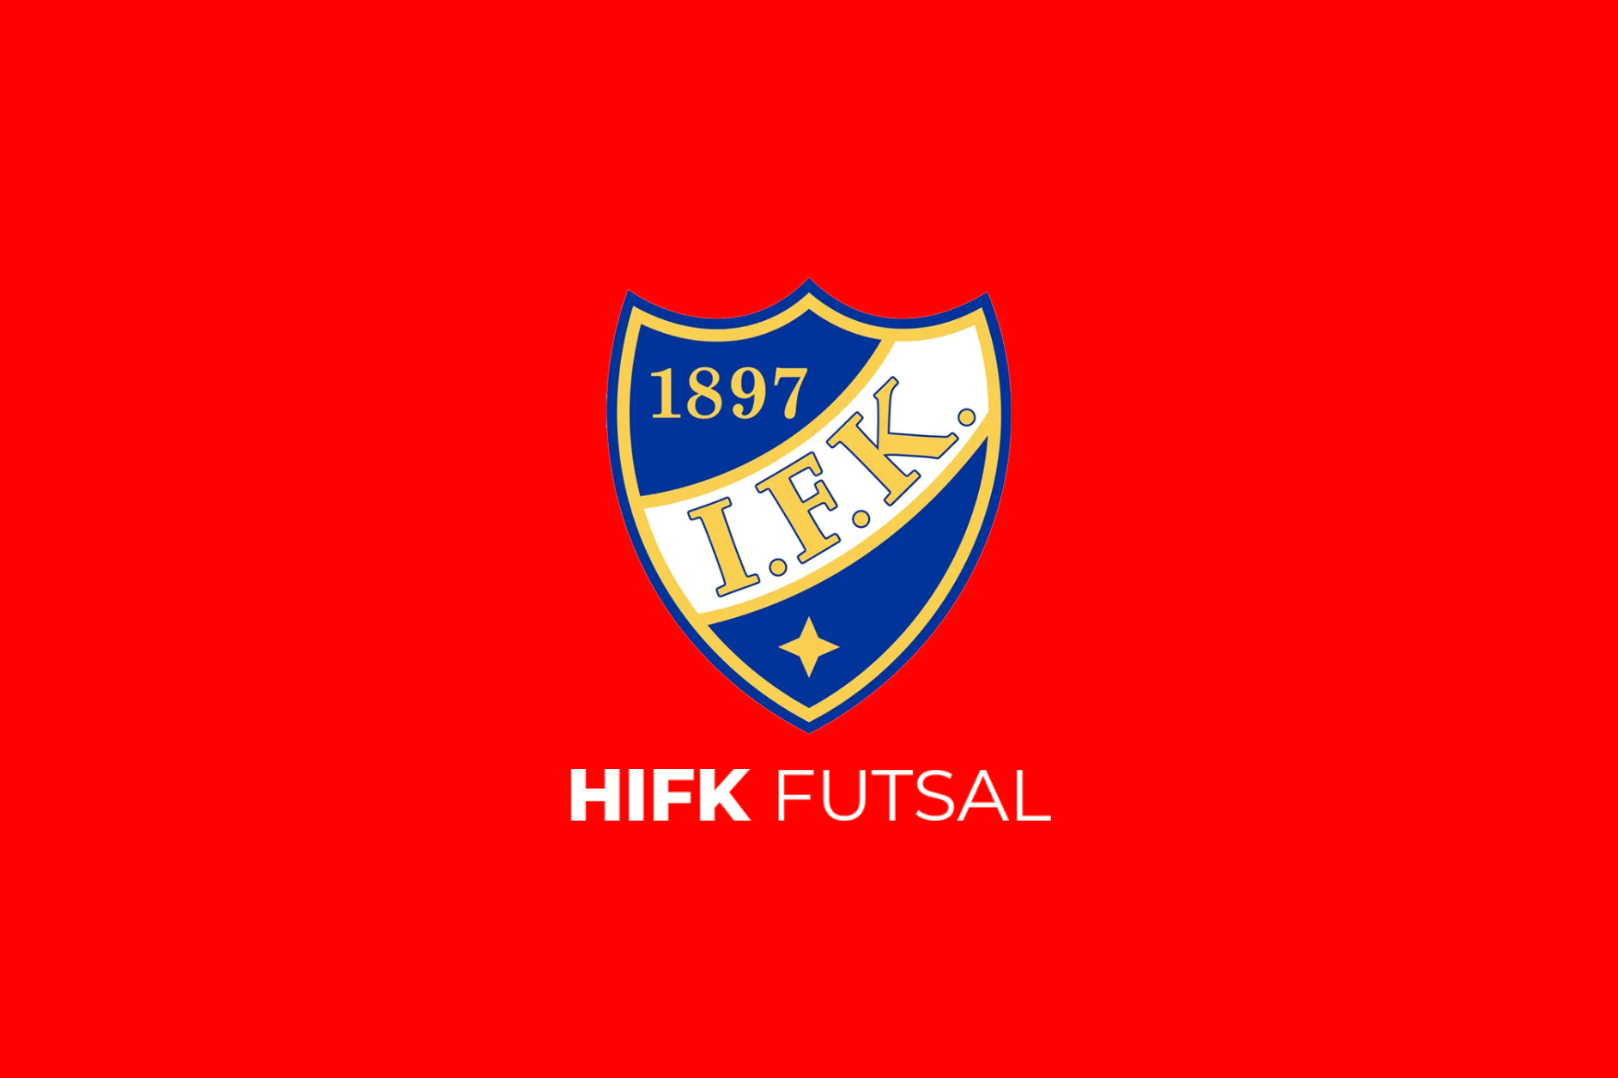 HIFK Futsalin uudet nettisivut avattu